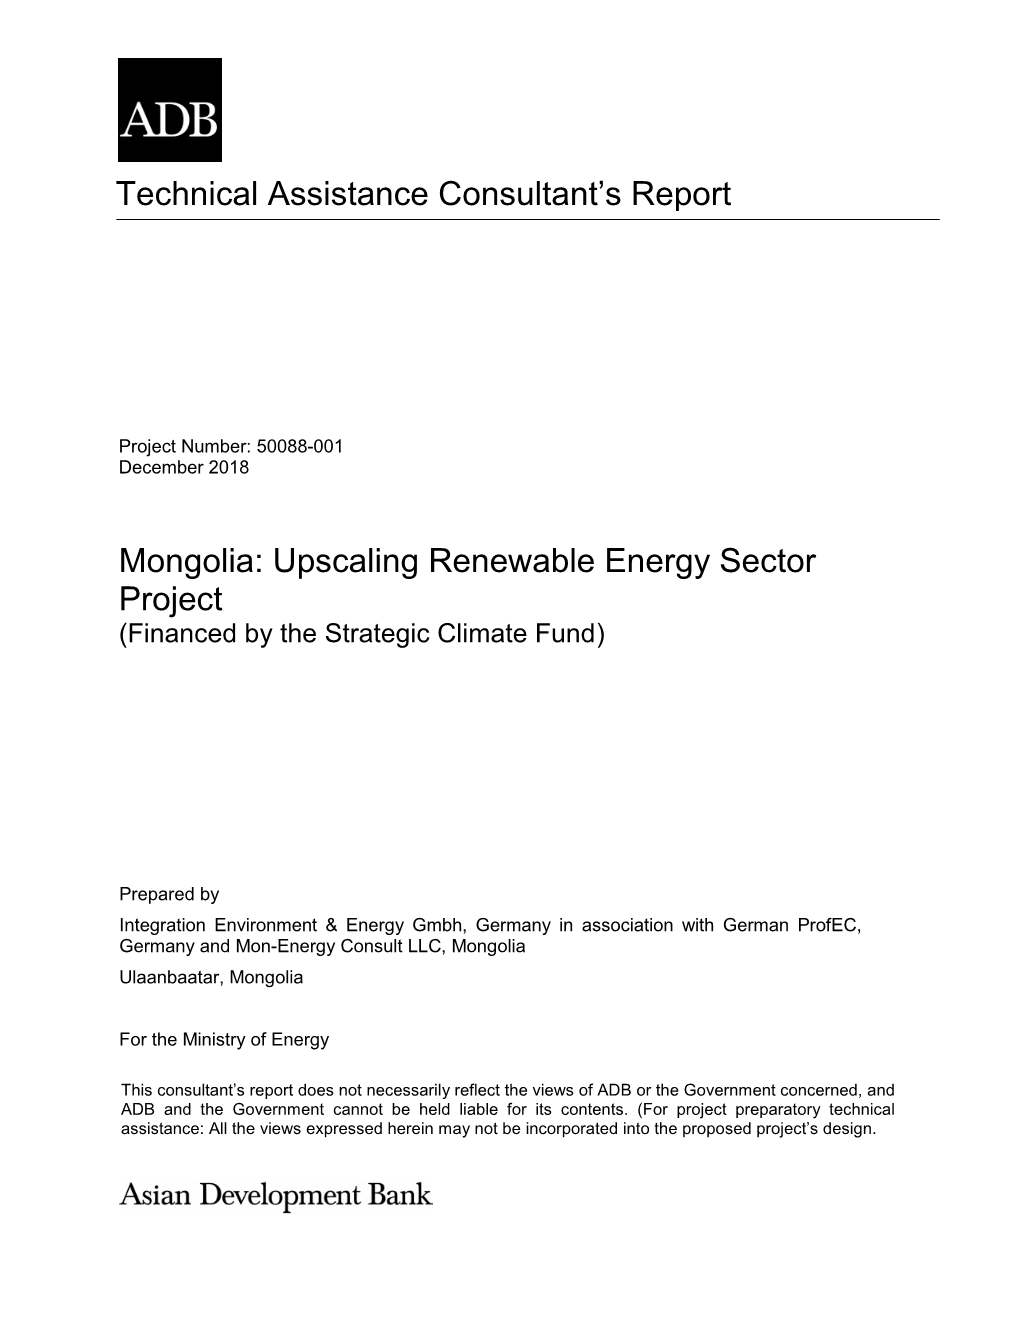 50088-001: Upscaling Renewable Energy Sector Project